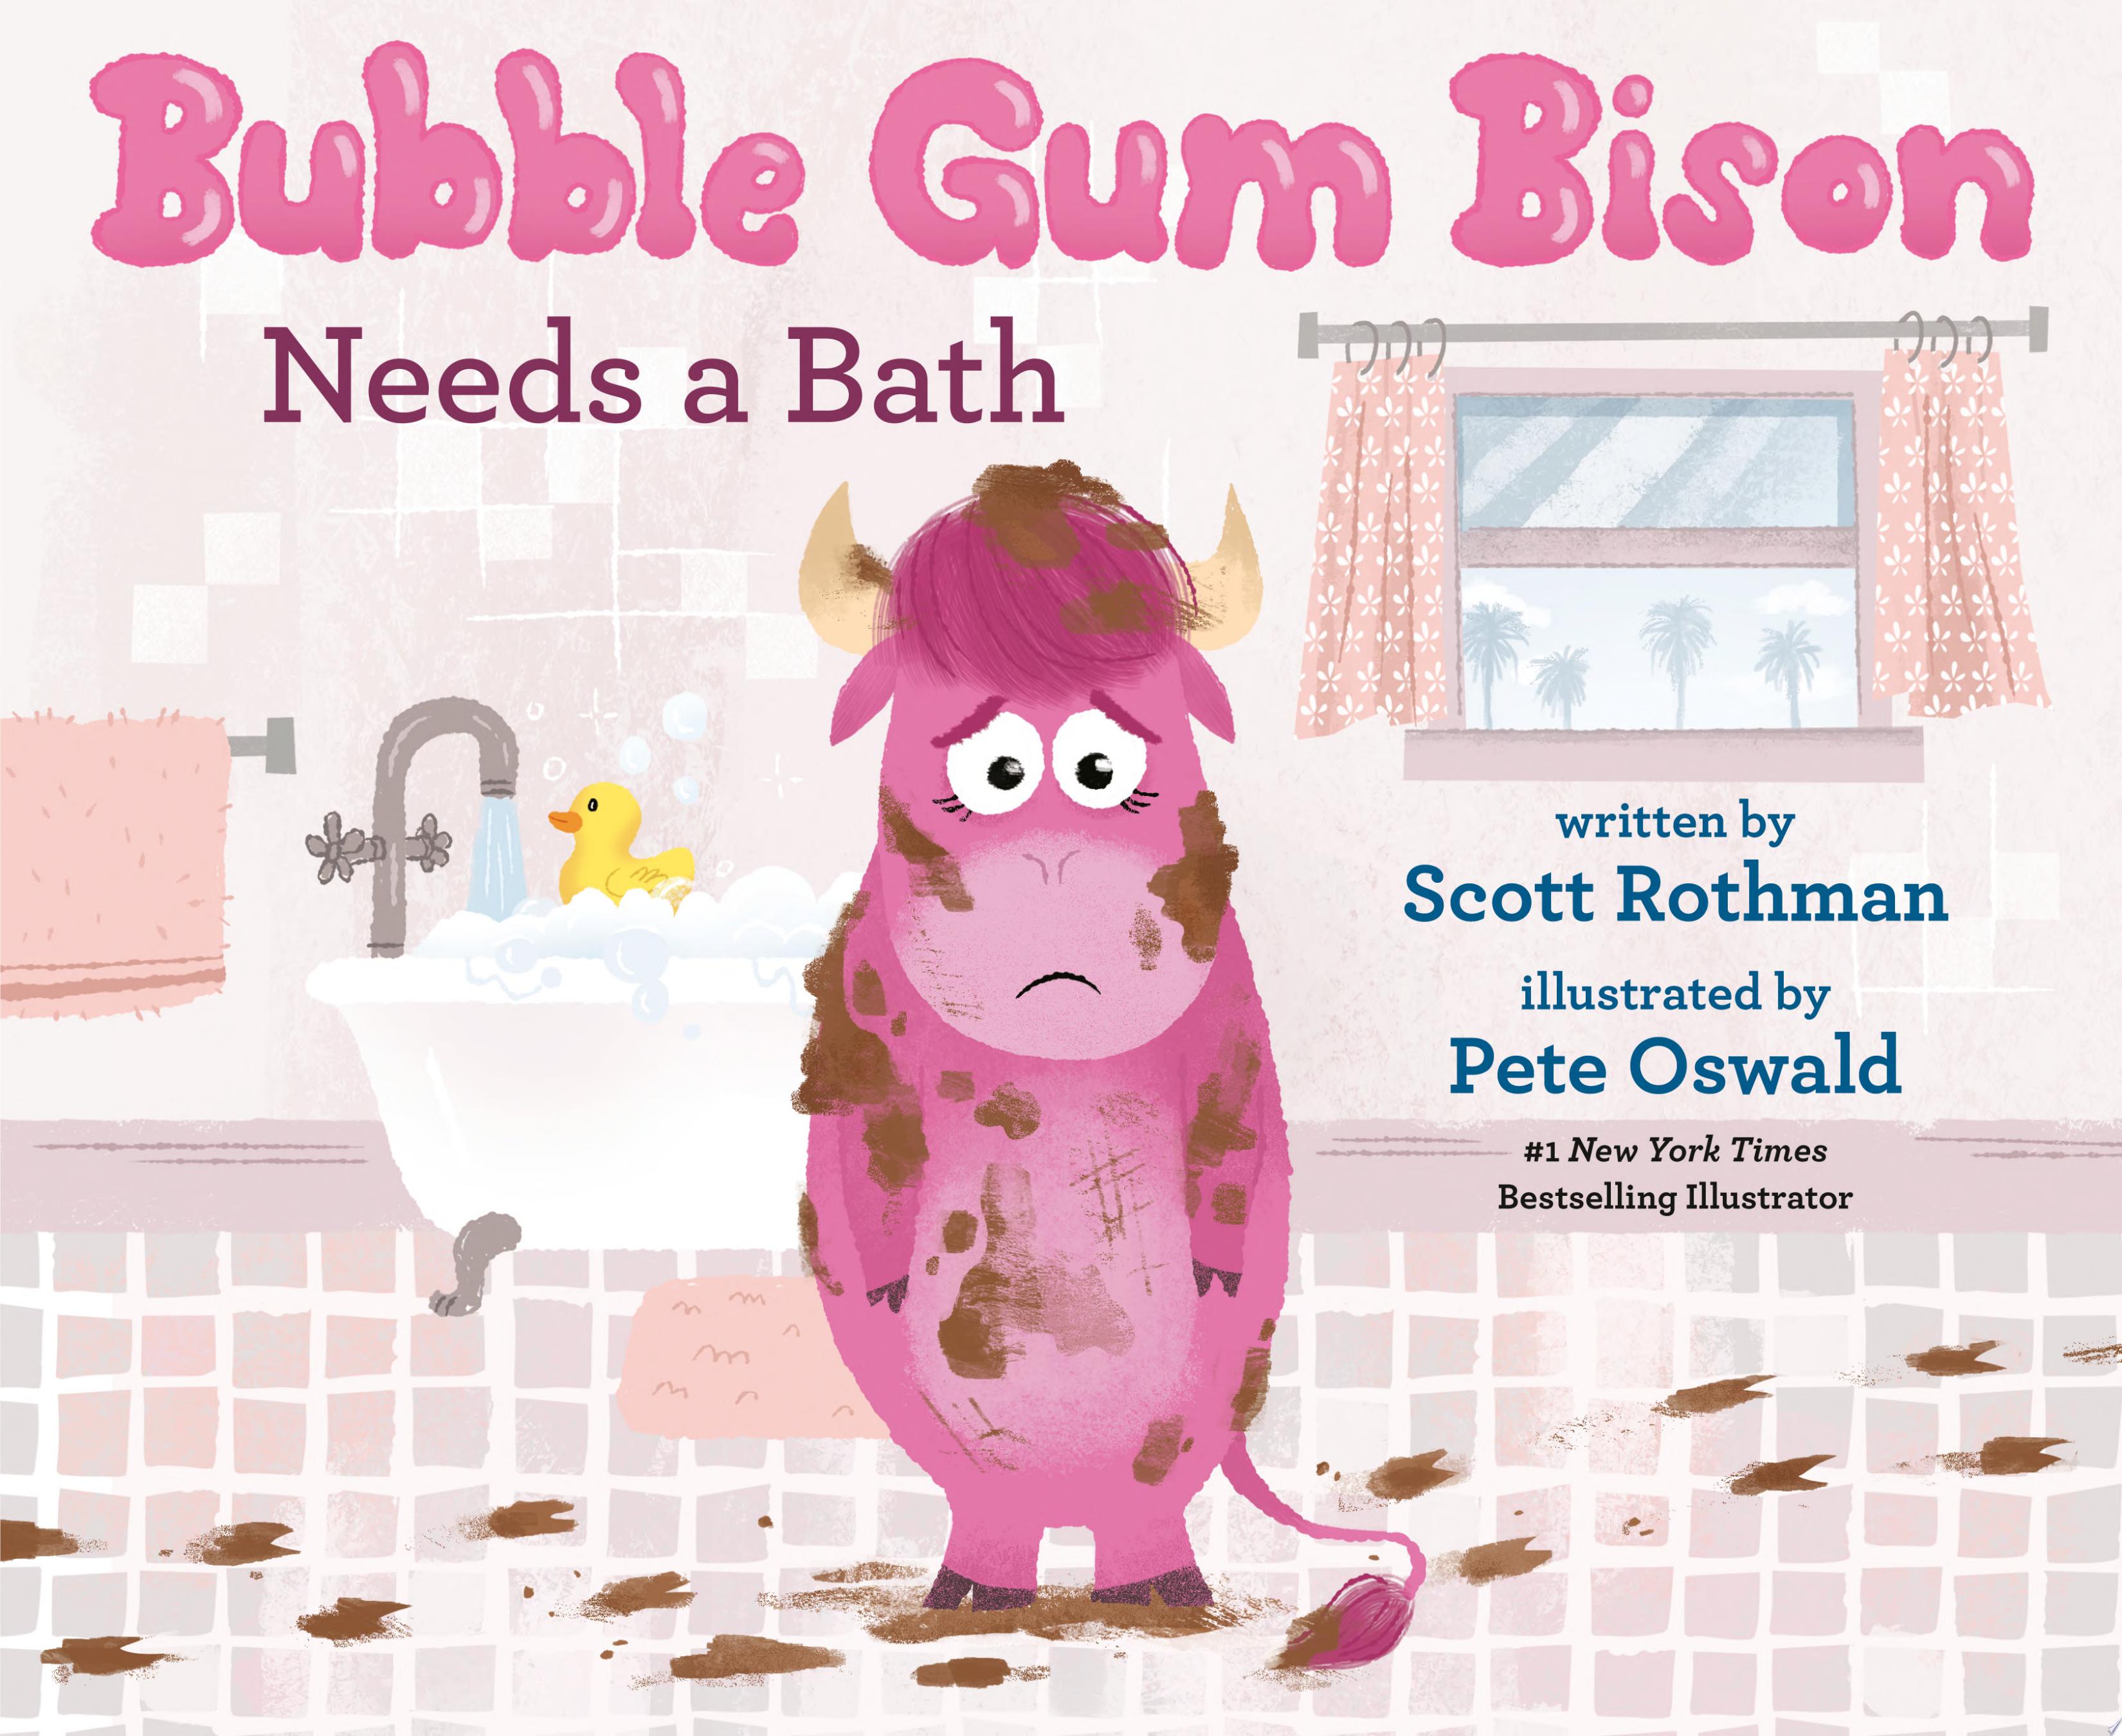 Image for "Bubble Gum Bison Needs a Bath"